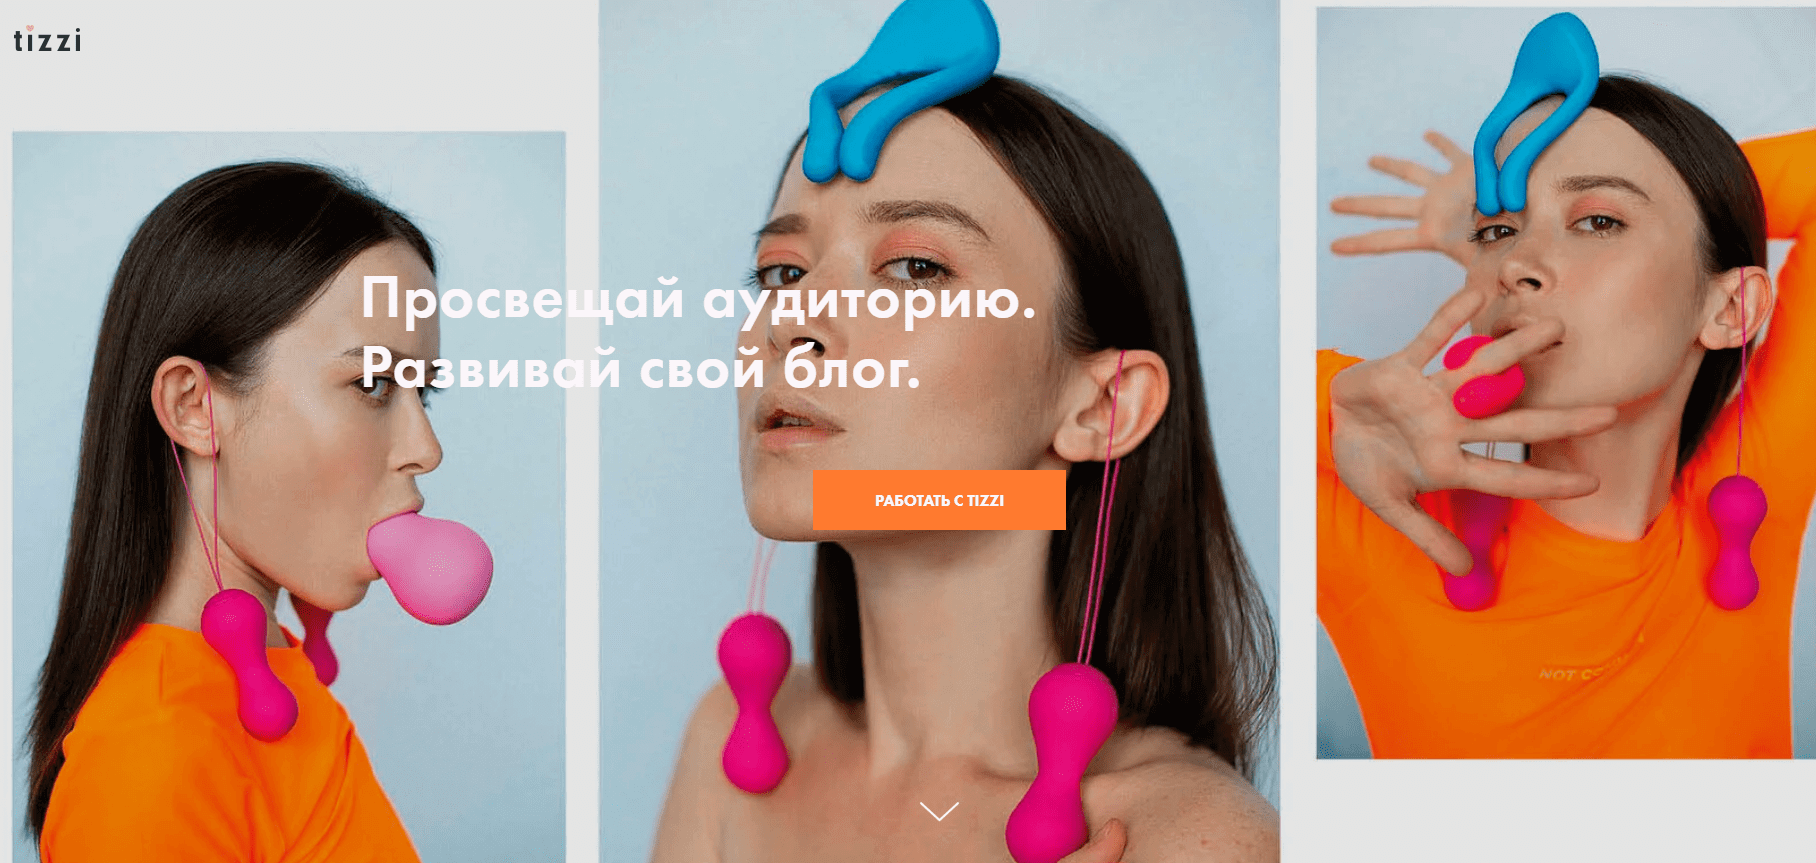 Посадочная страница секс-шопа с рекламным предложением для блогеров